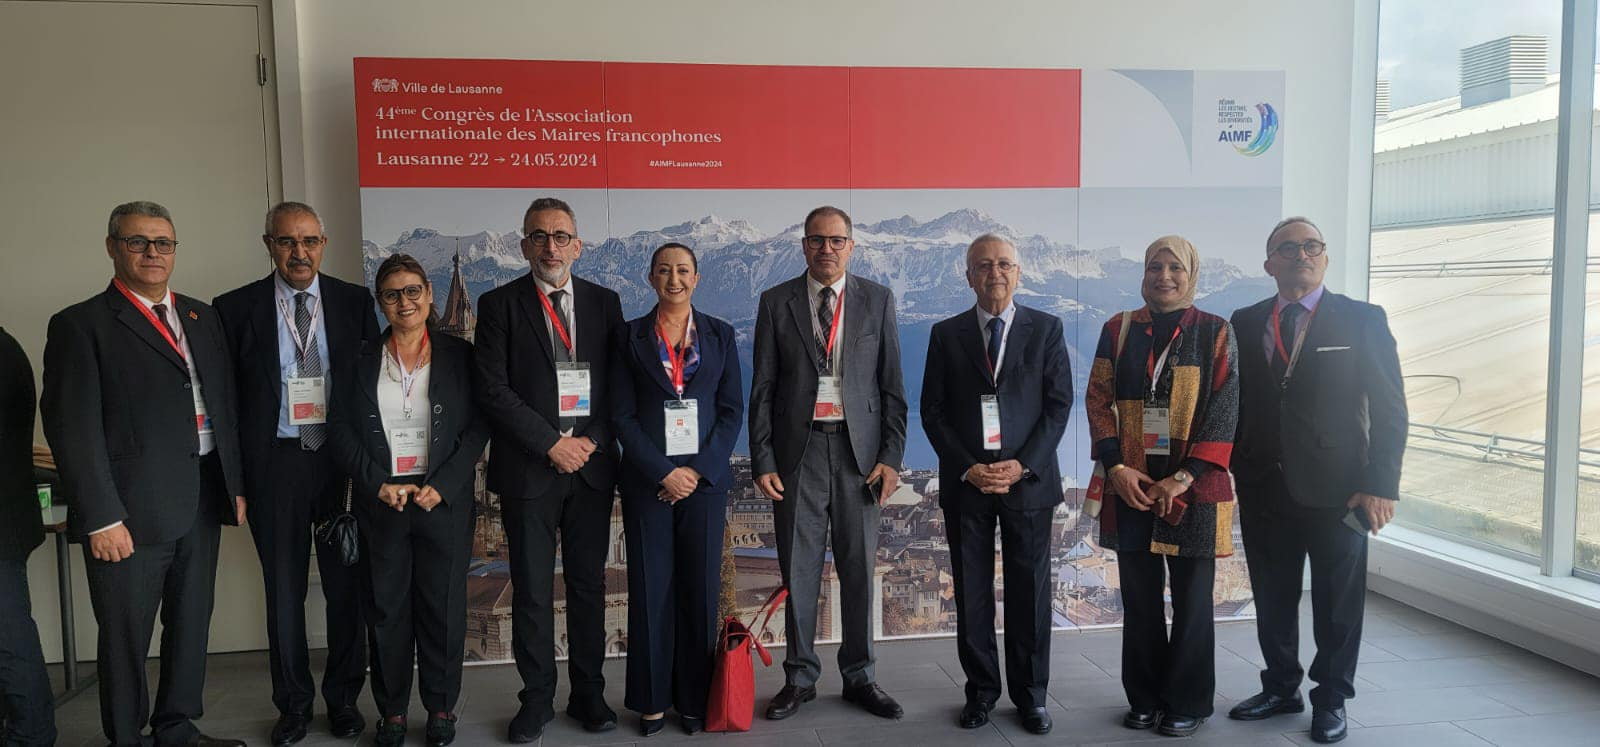 سويسرا..عمدة الرباط تمثل العاصمة في الجمعية العامة الرابعة والأربعين للجمعية الدولية لرؤساء البلديات الفرنكوفونية (AIMF)